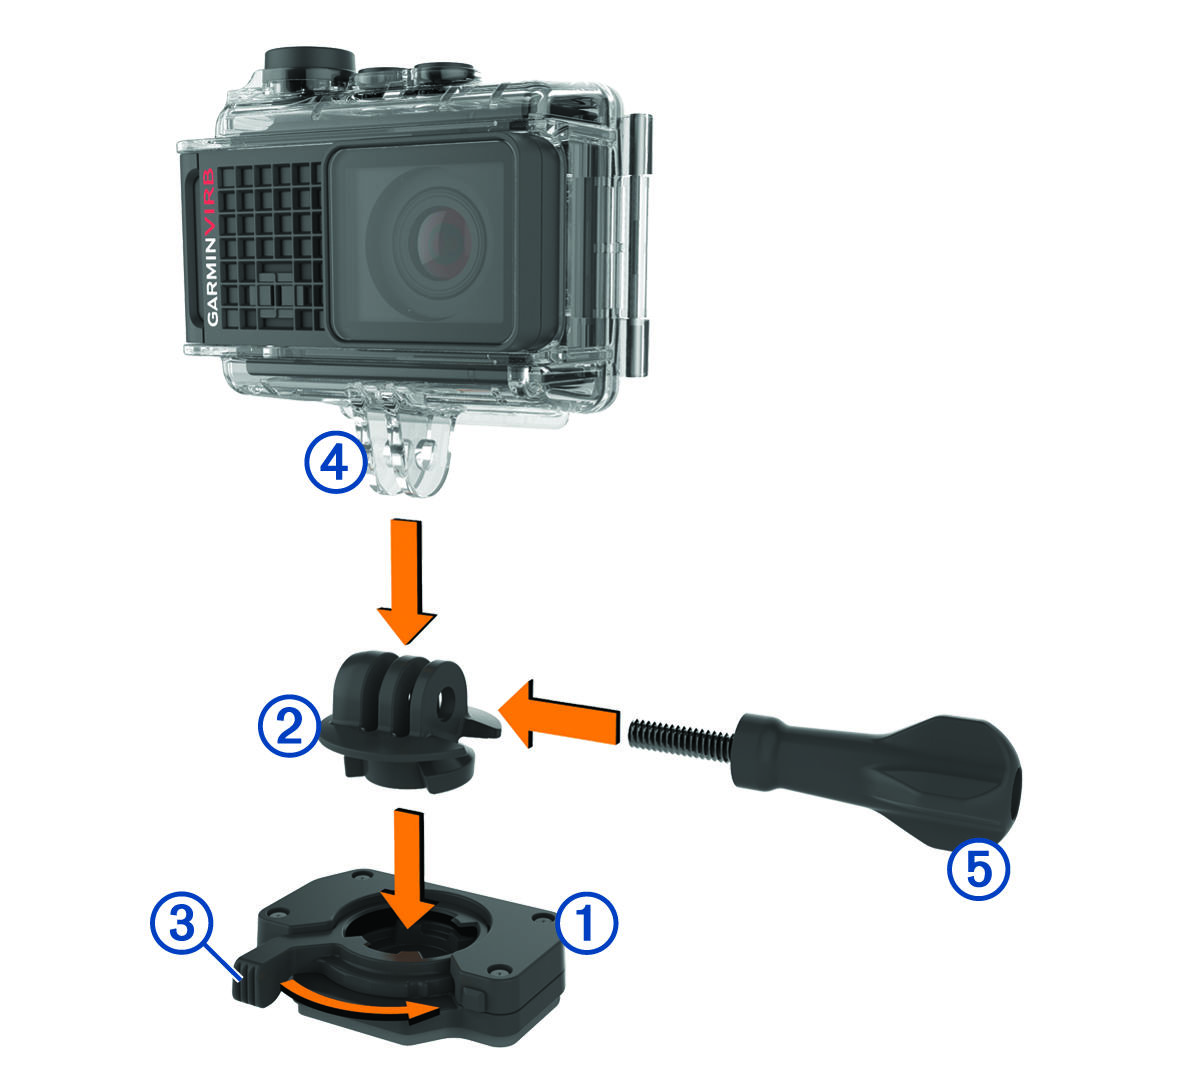 Адаптер, крепление камеры и винт с накатанной головкой вставляются в монтажное основание с кронштейном с обозначениями